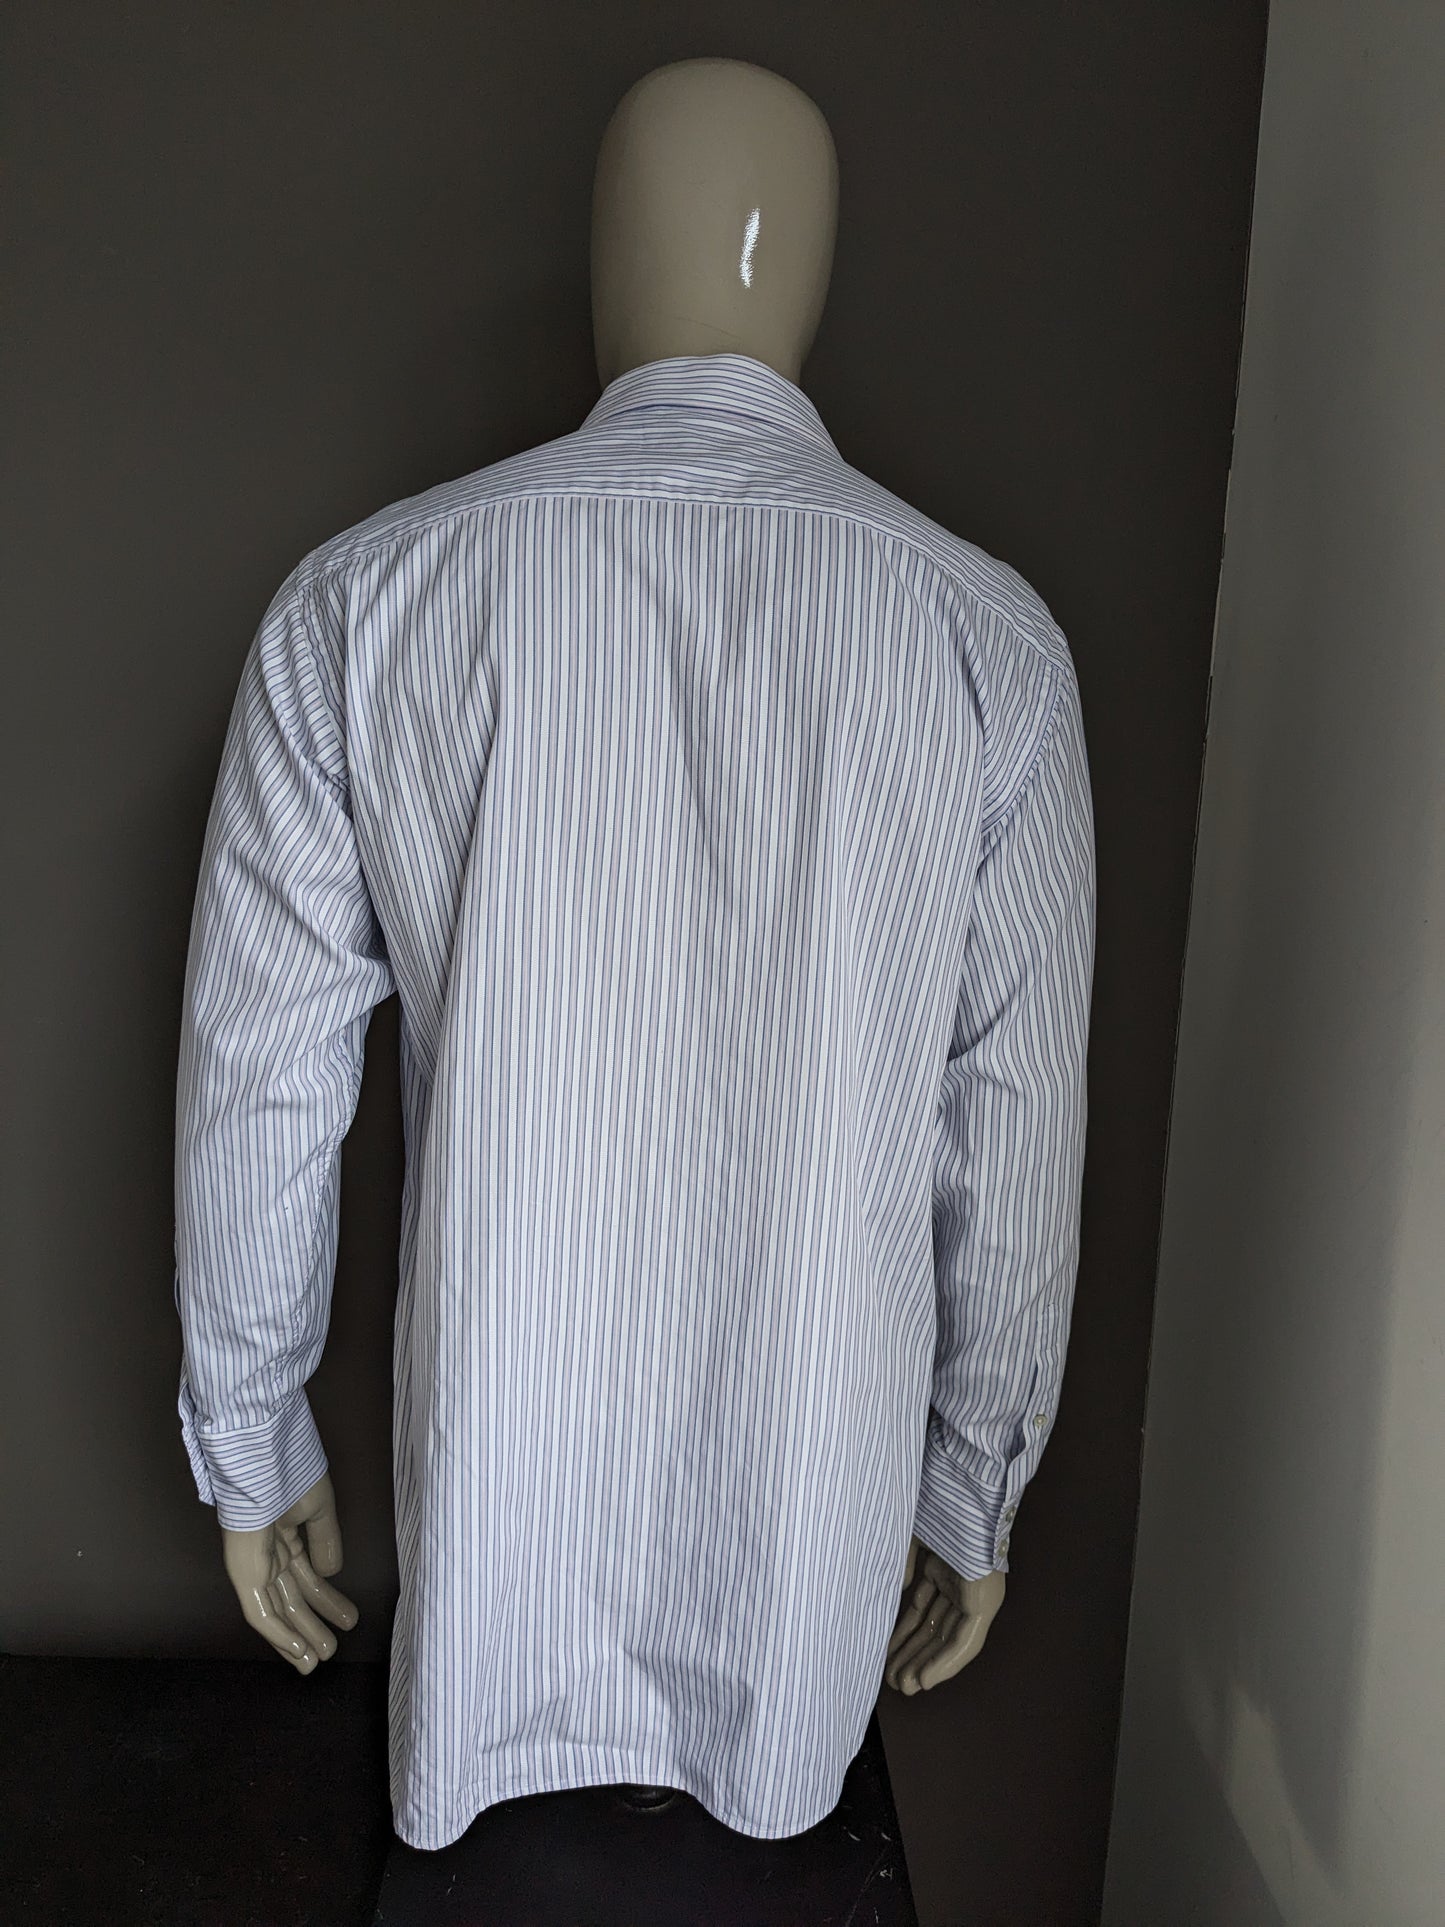 Vintage Arrow shirt. Blue pink white striped. Size XL.